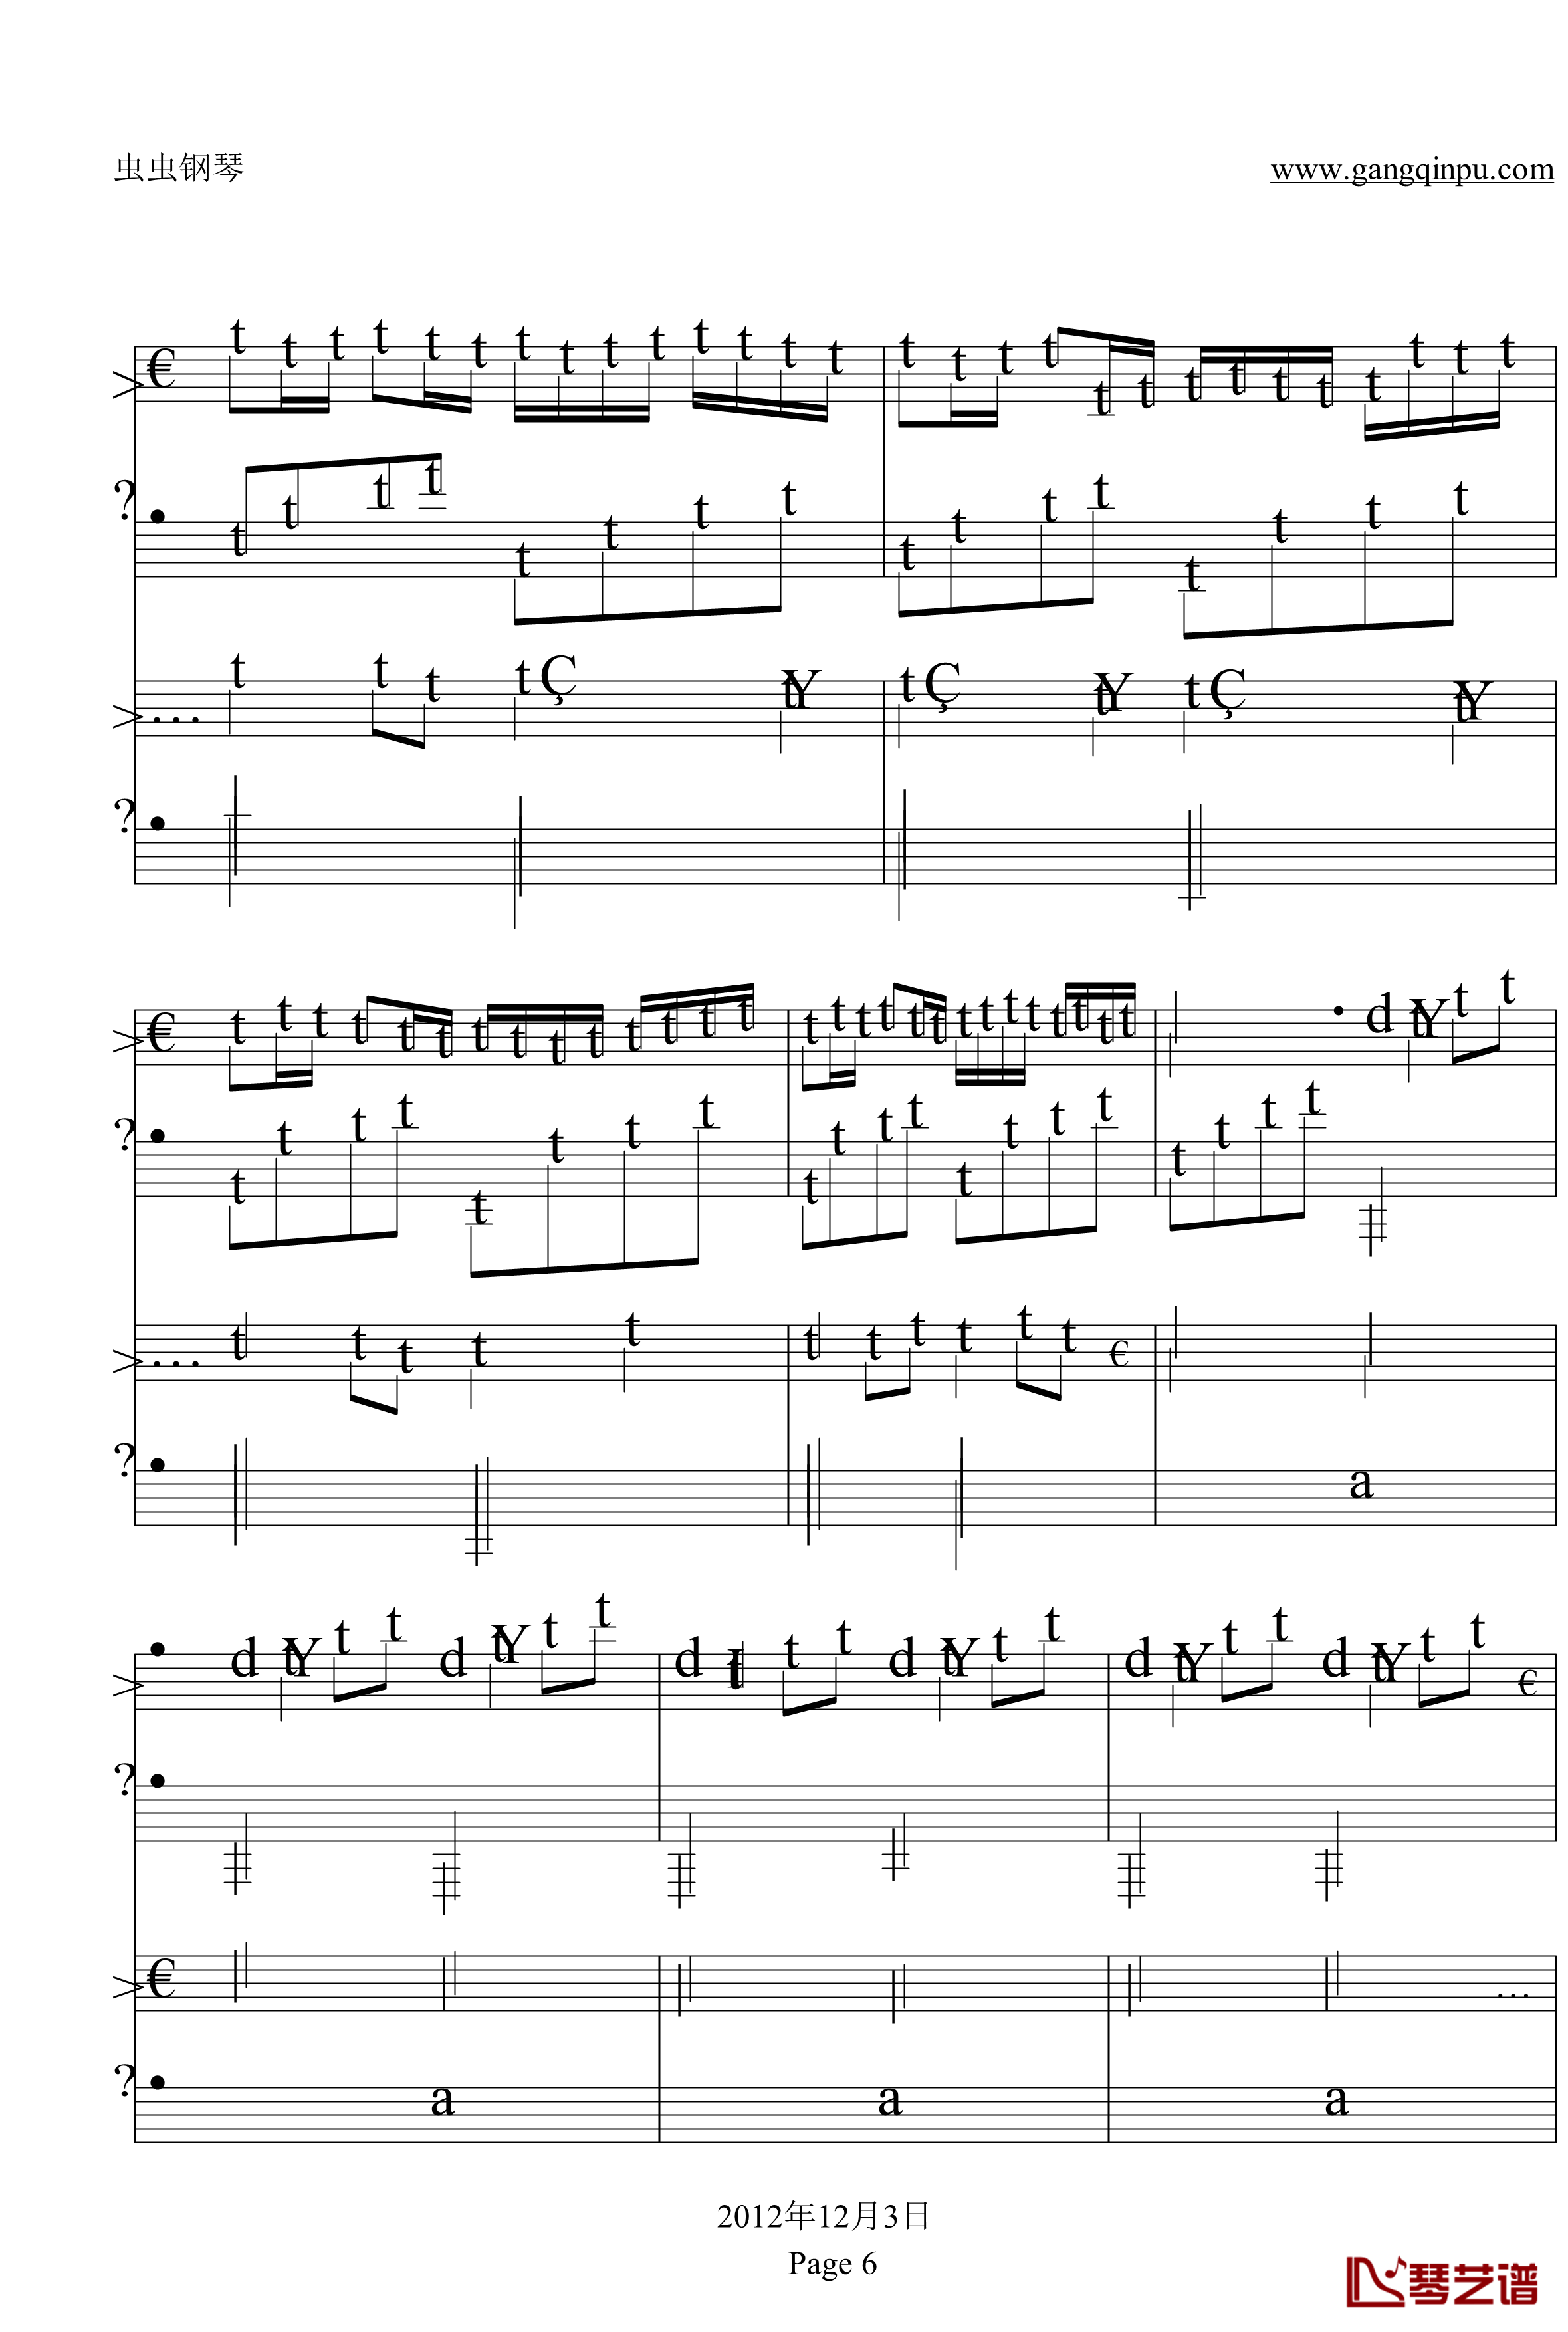 卡农钢琴谱-双钢琴-帕赫贝尔-Pachelbel6